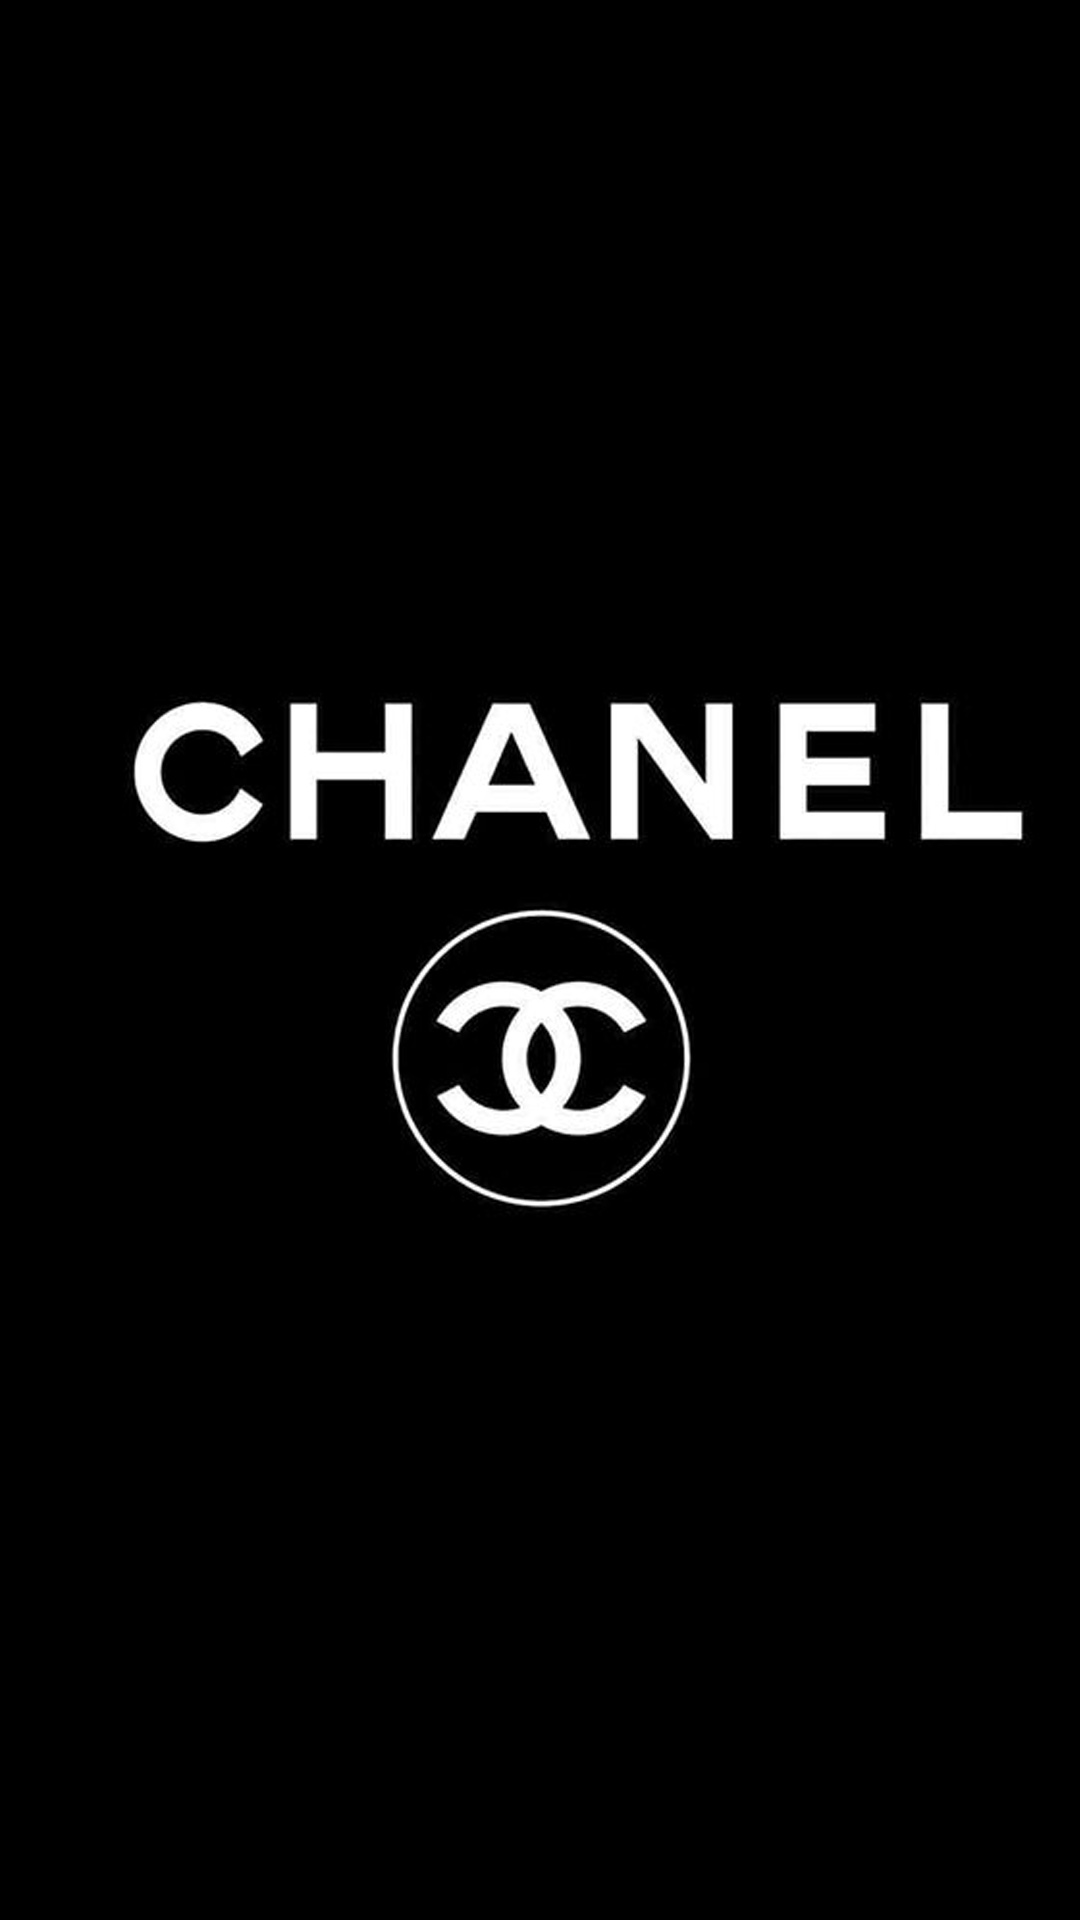 Chanel シャネル ブランドのスマホ壁紙 Iphone Wallpapers